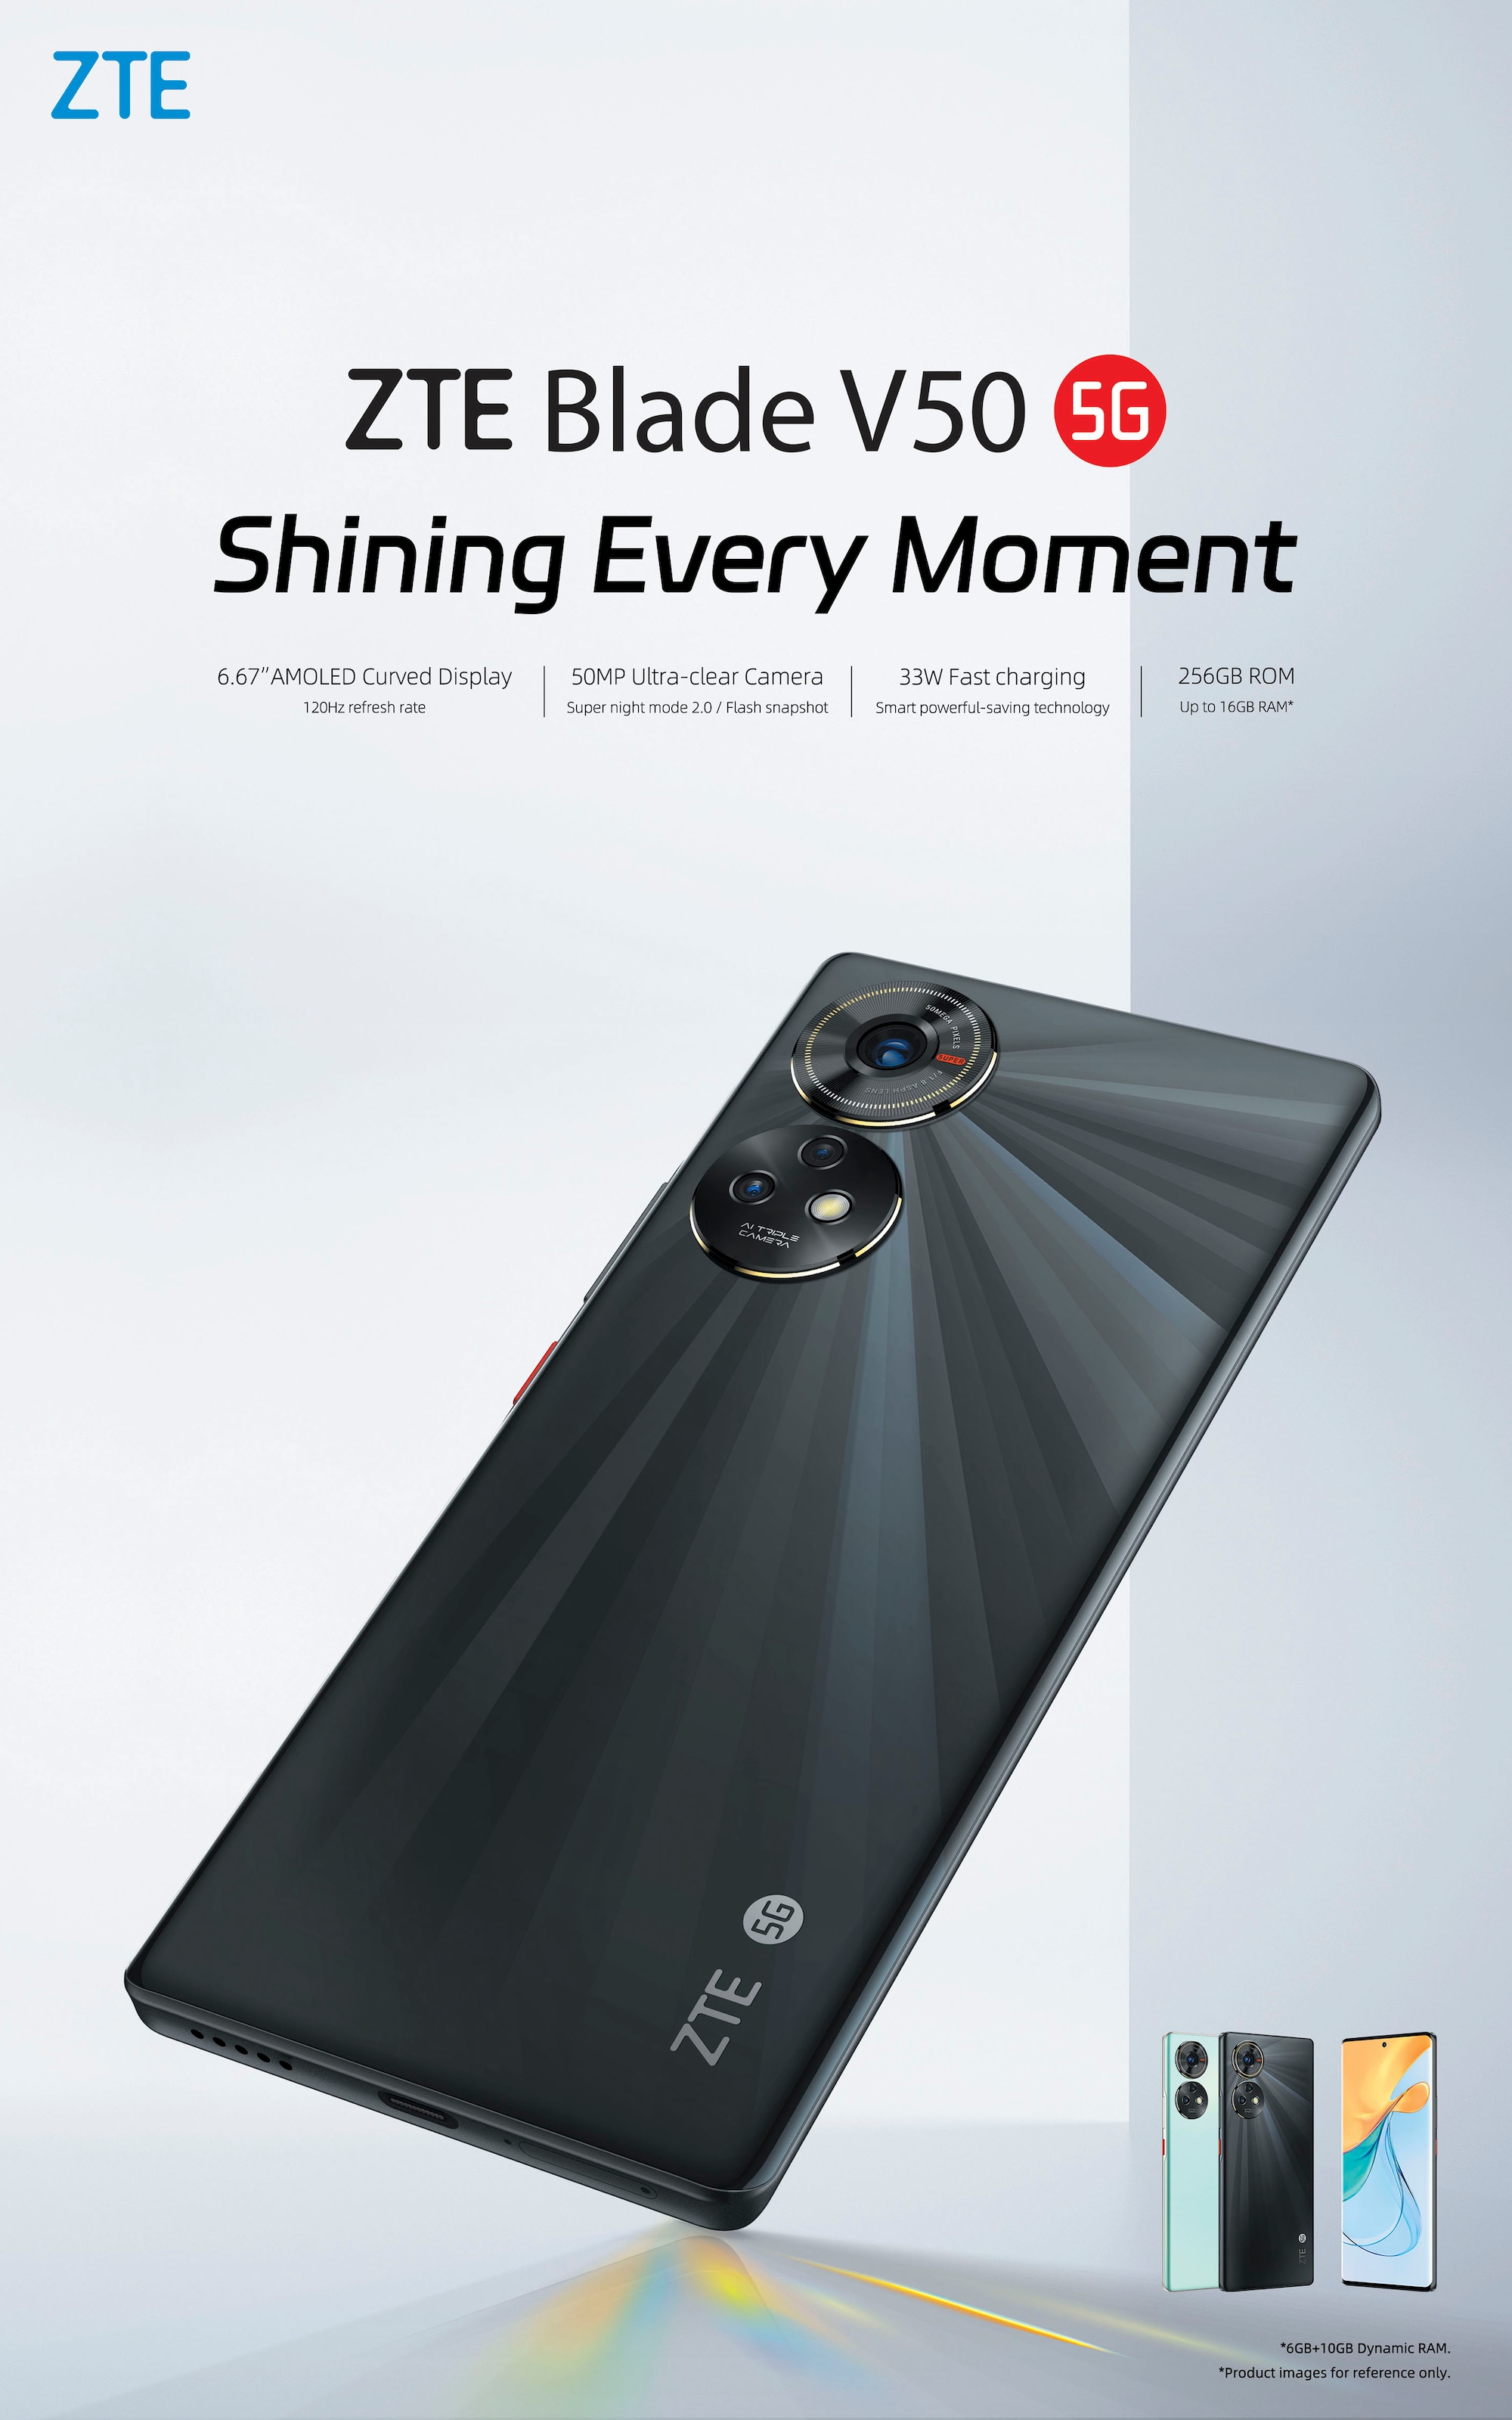 ZTE Smartphone »Blade V50 5G«, schwarz, 16,94 cm/6,67 Zoll, 256 GB  Speicherplatz, 50 MP Kamera jetzt kaufen bei OTTO